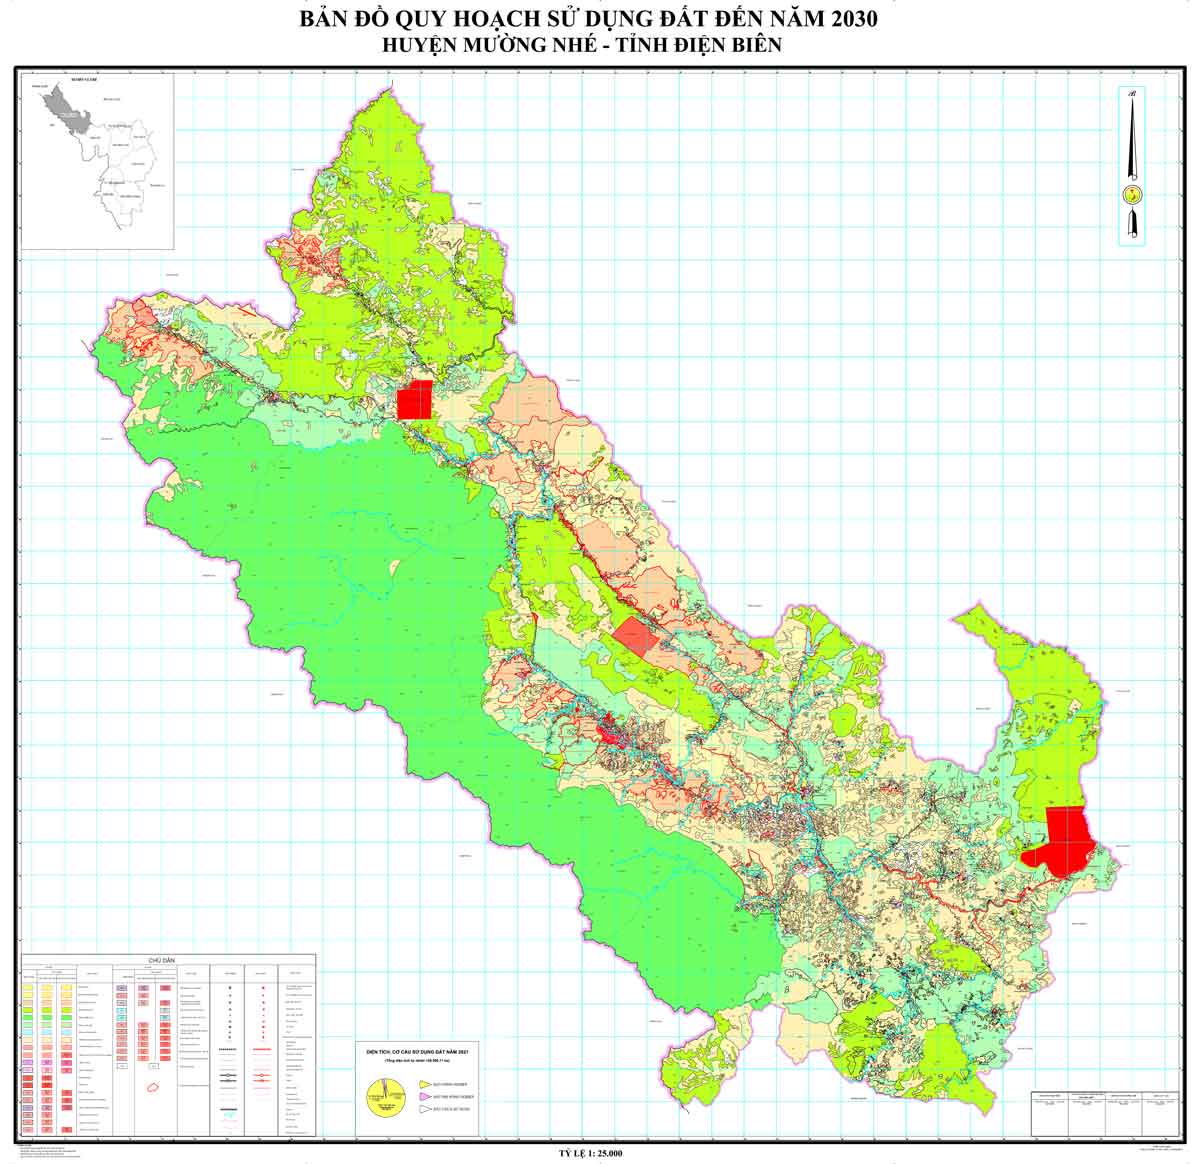 Bản đồ QHSDĐ huyện Mường Nhé đến năm 2030